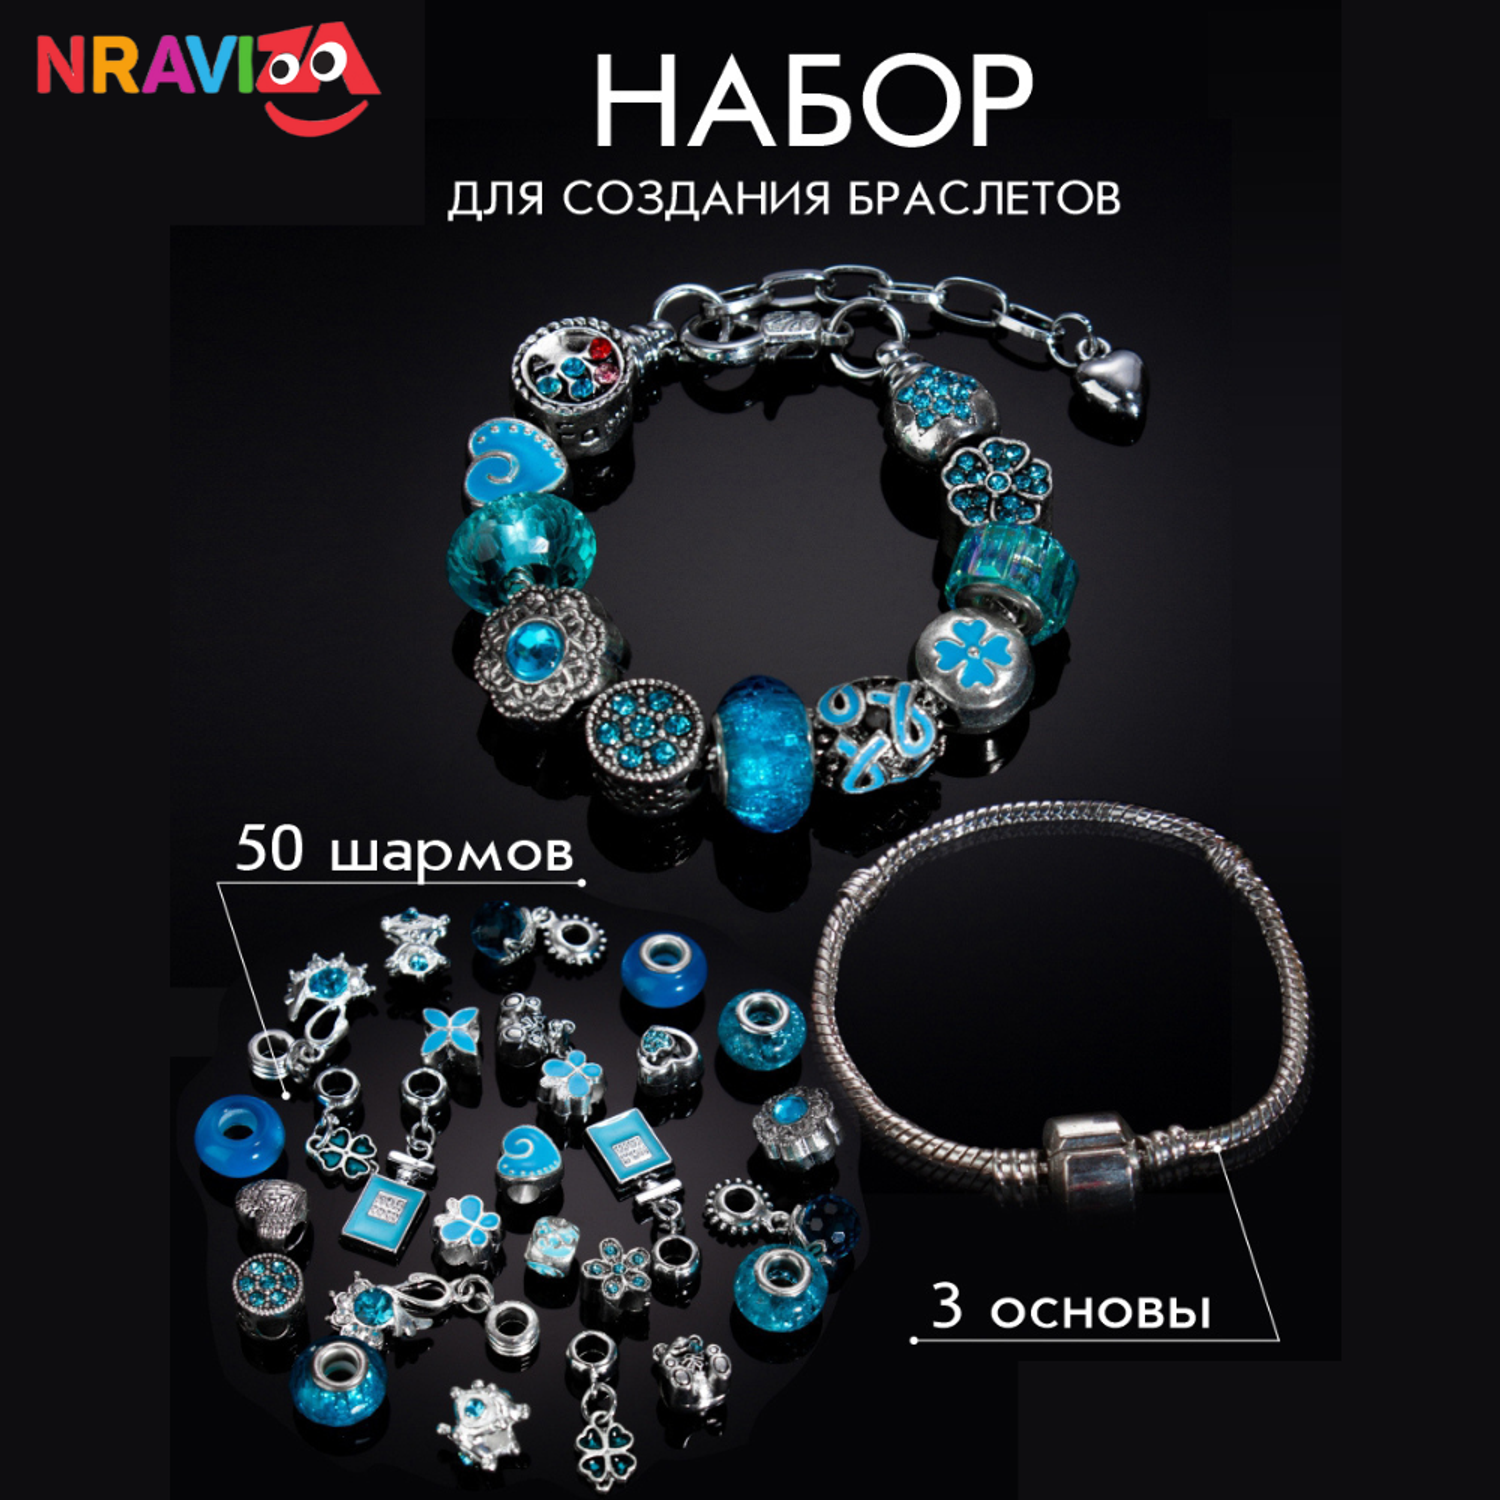 Наборы для создания браслетов NRAVIZA Детям голубой - фото 1